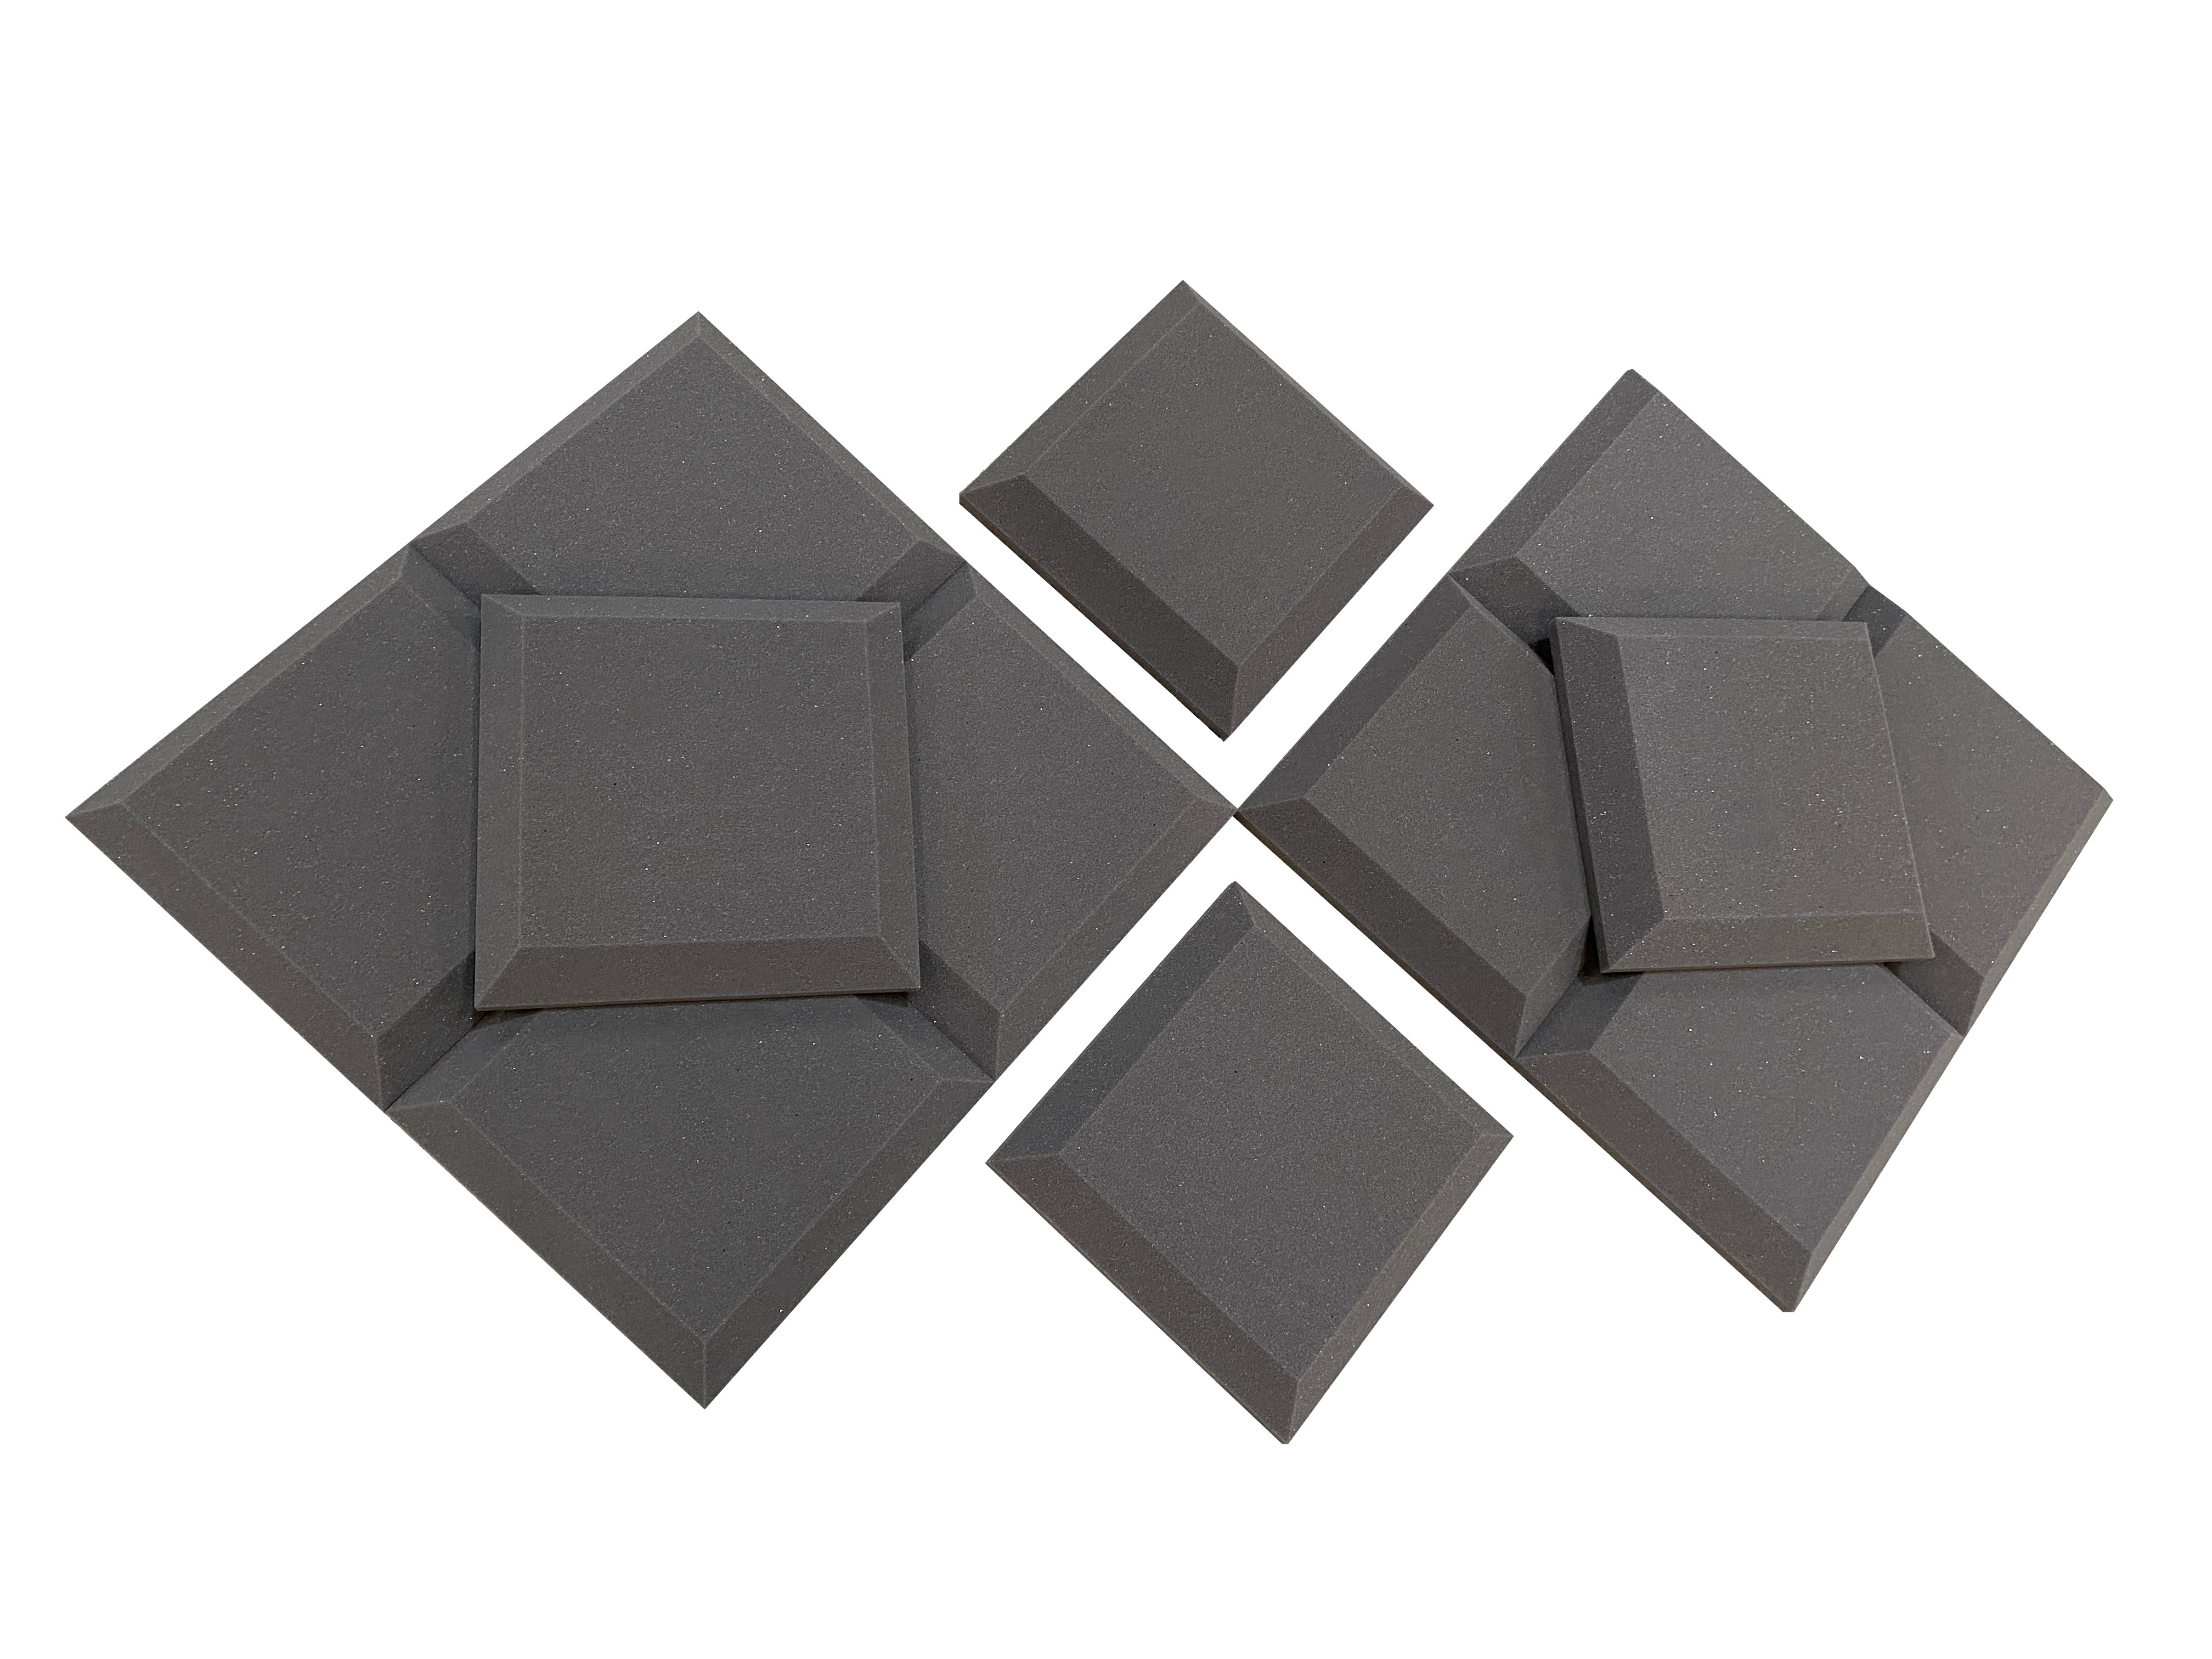 Tegular 12" Acoustic Studio Foam Tile Pack – 12 Tiles, 1.1qm Coverage